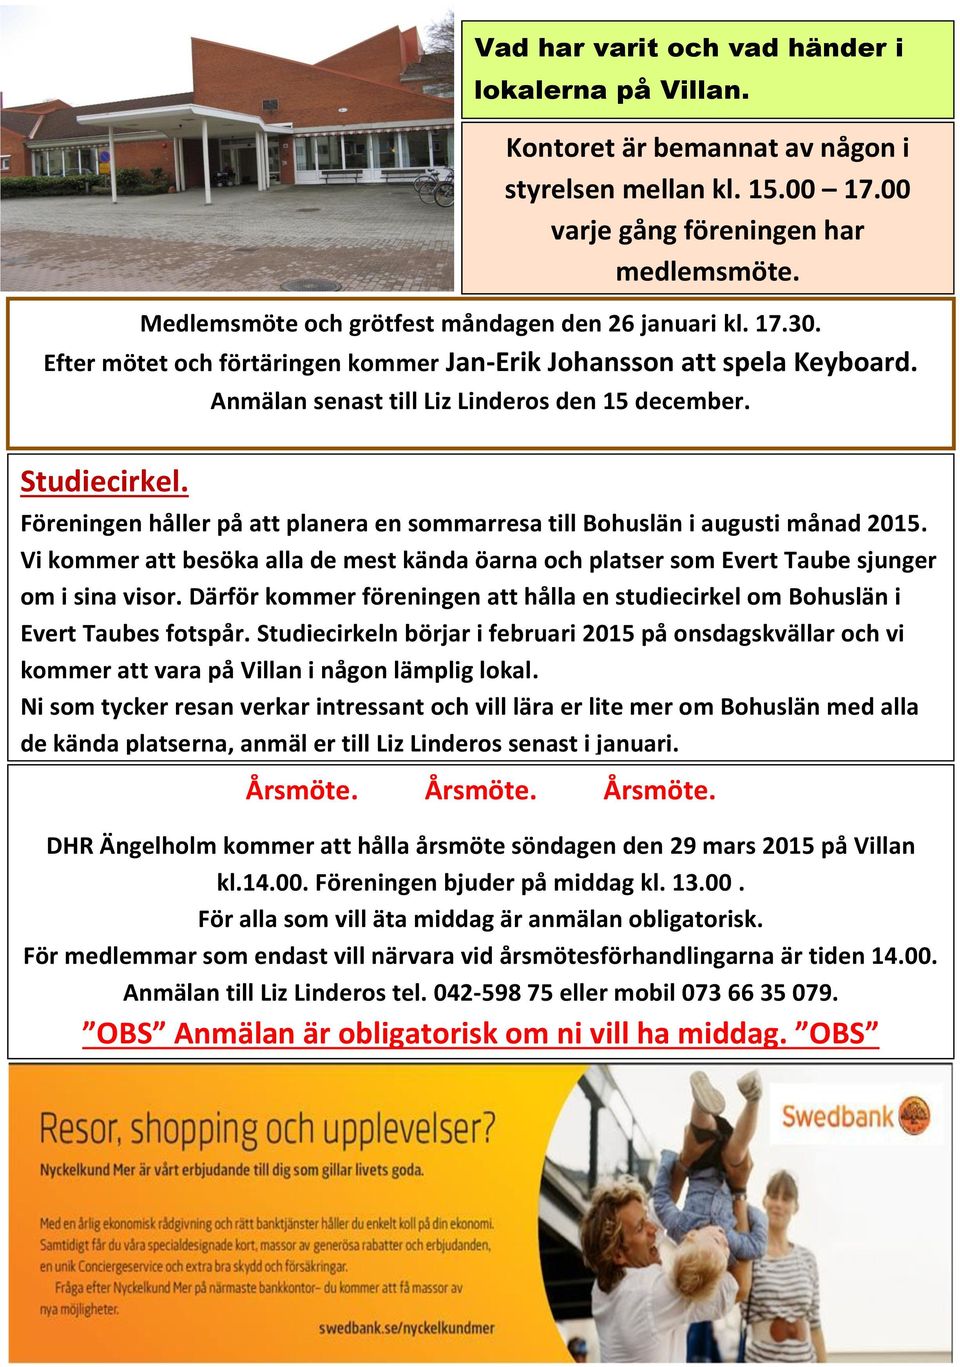 Föreningen håller på att planera en sommarresa till Bohuslän i augusti månad 2015. Vi kommer att besöka alla de mest kända öarna och platser som Evert Taube sjunger om i sina visor.